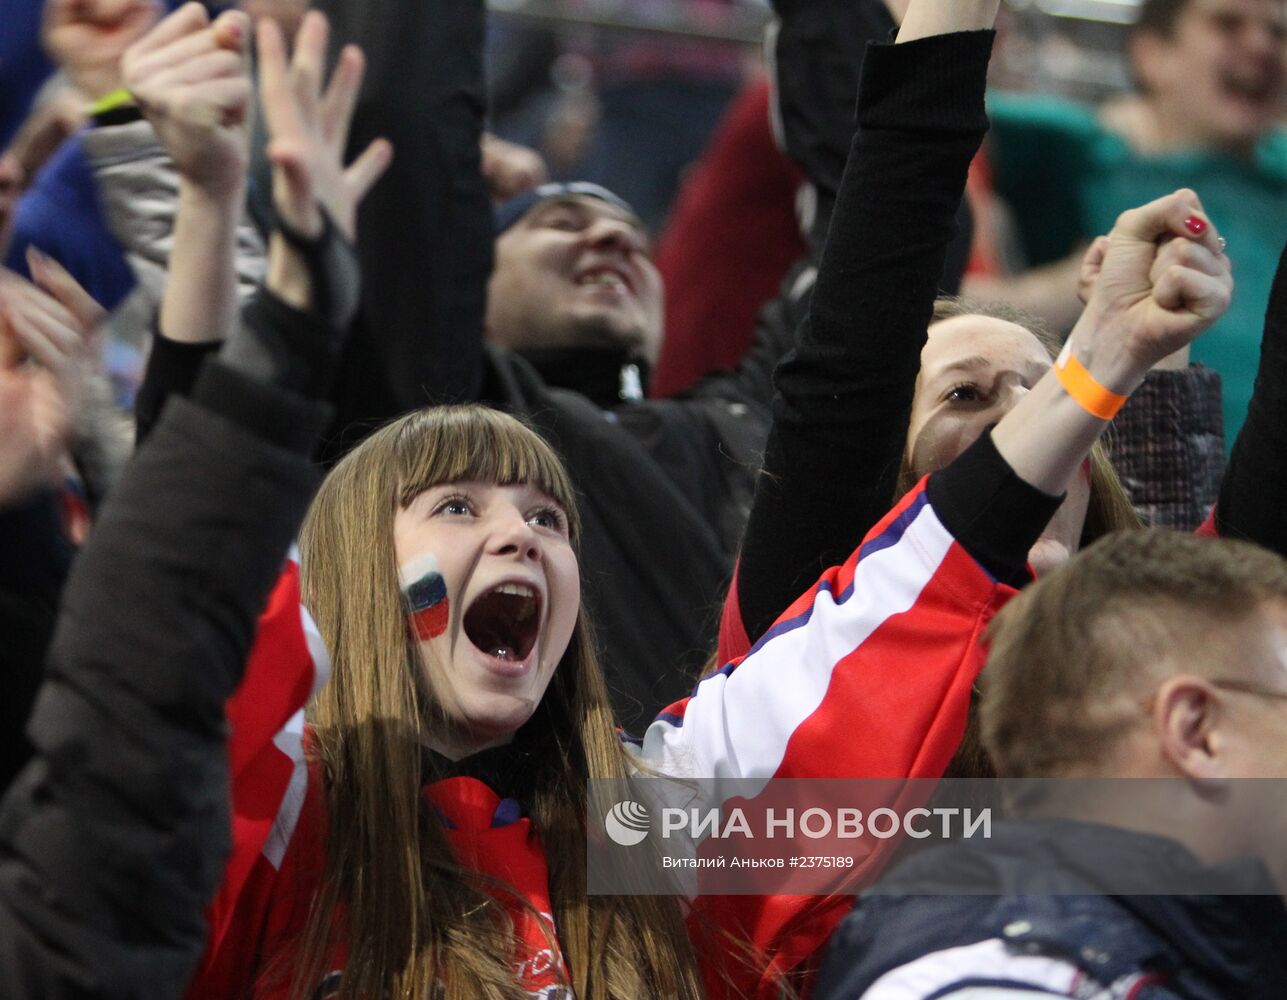 Болельщики смотрят трансляцию хоккейного матча Россия - США